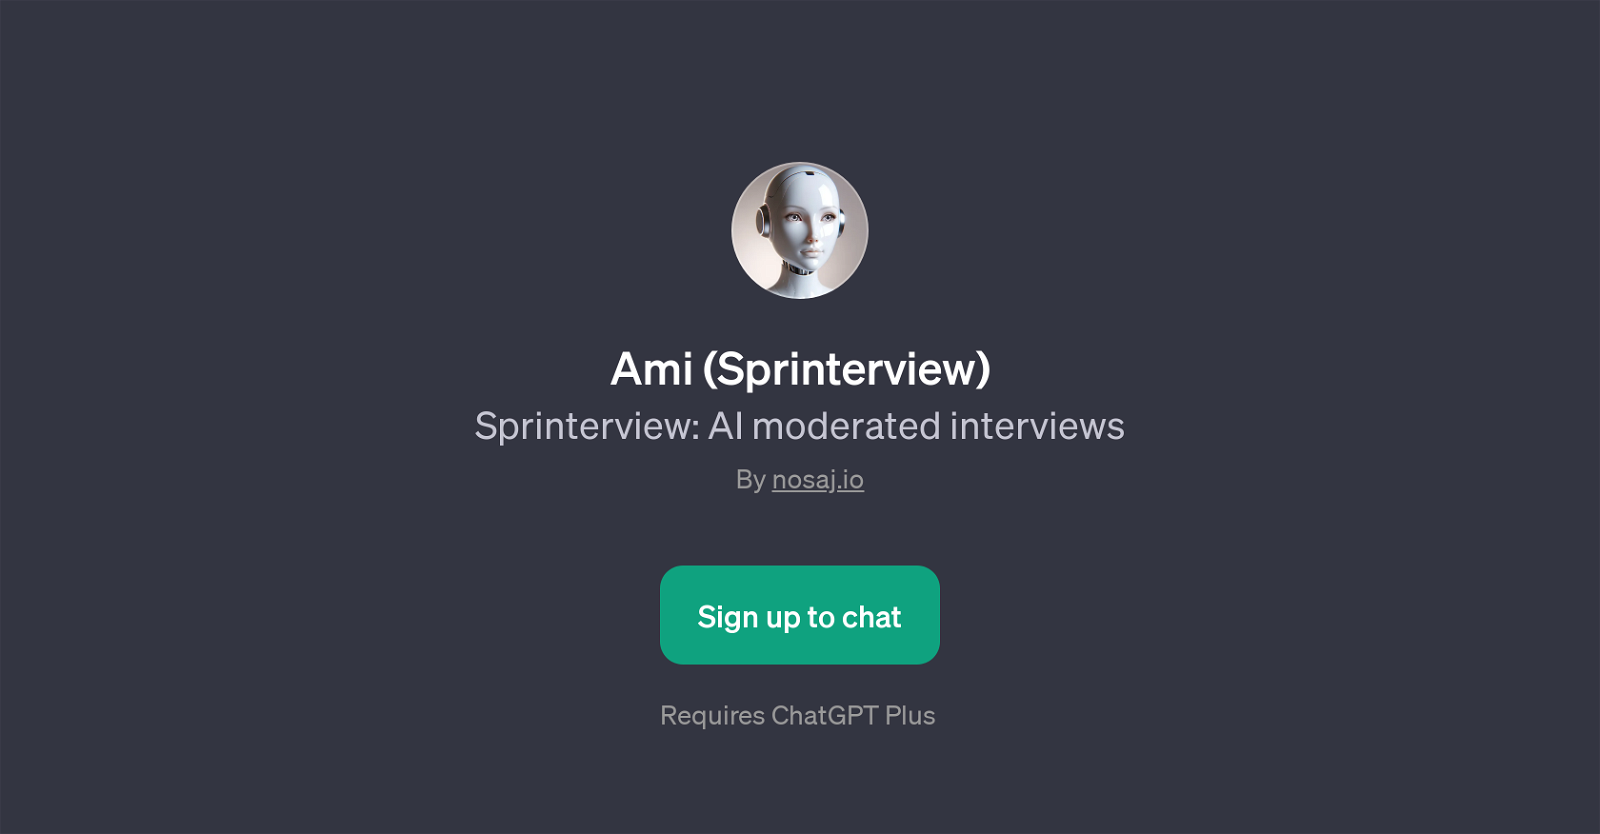 Ami (Sprinterview) website